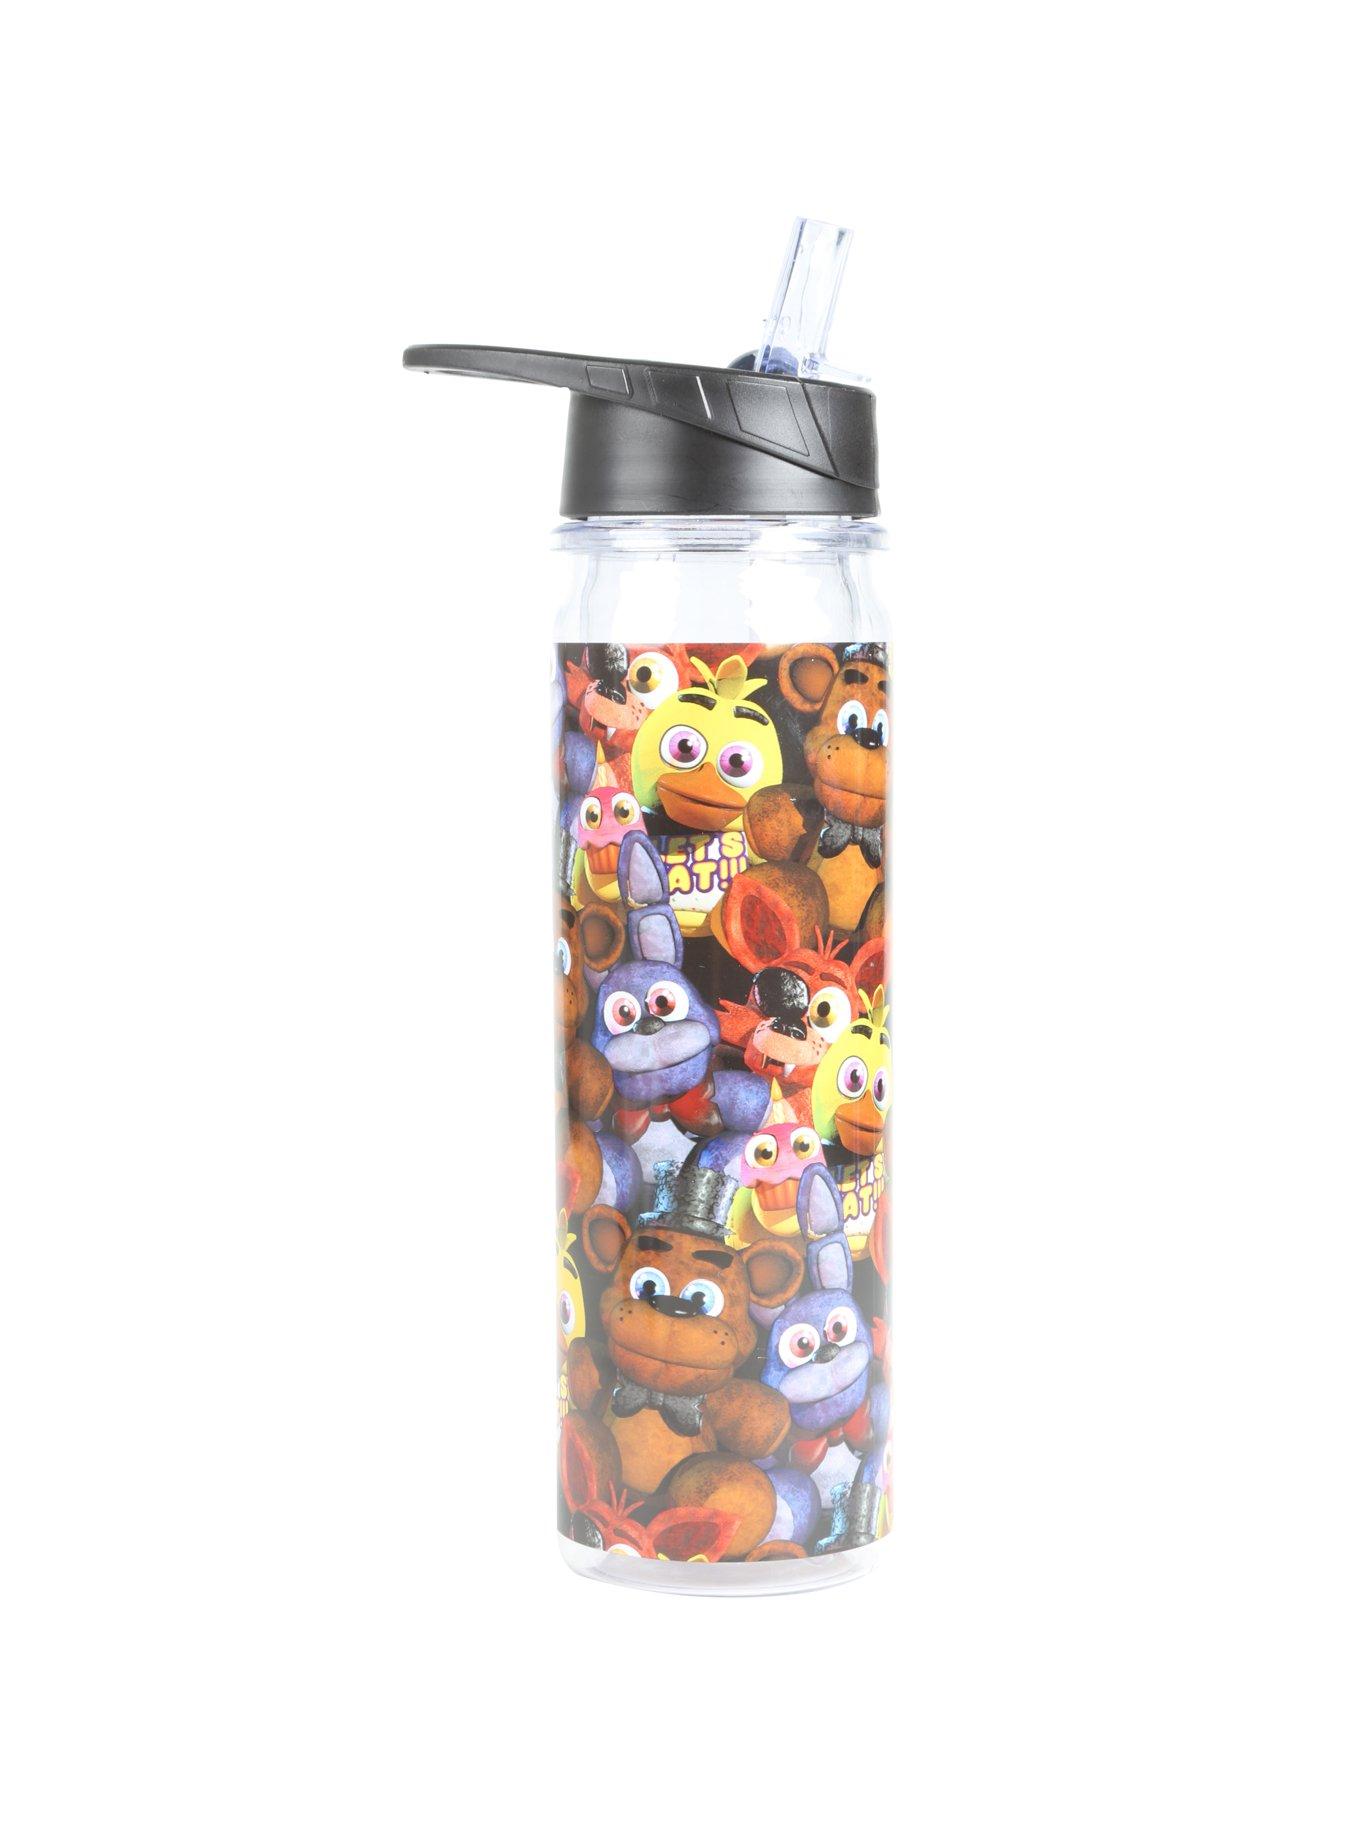 Copy of Spongebob - 2 - Children's Tumbler, Kid's Water Bottle, Water